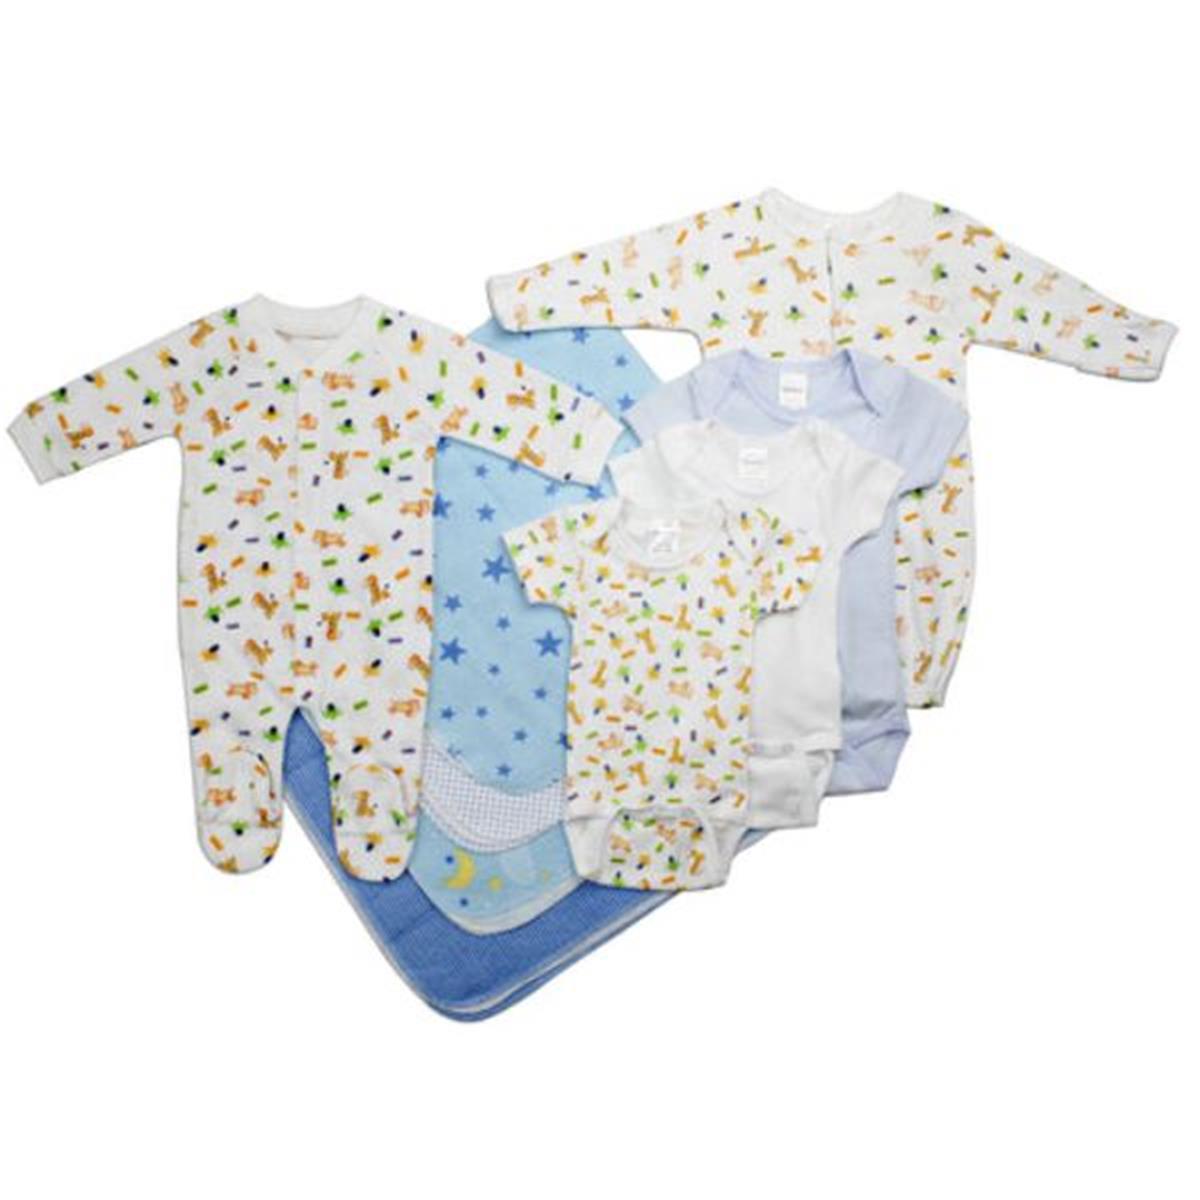 Bambini LS-0023 Newborn Baby Boy Layette Baby Shower Gift Set&#44; White & Blue - Newborn